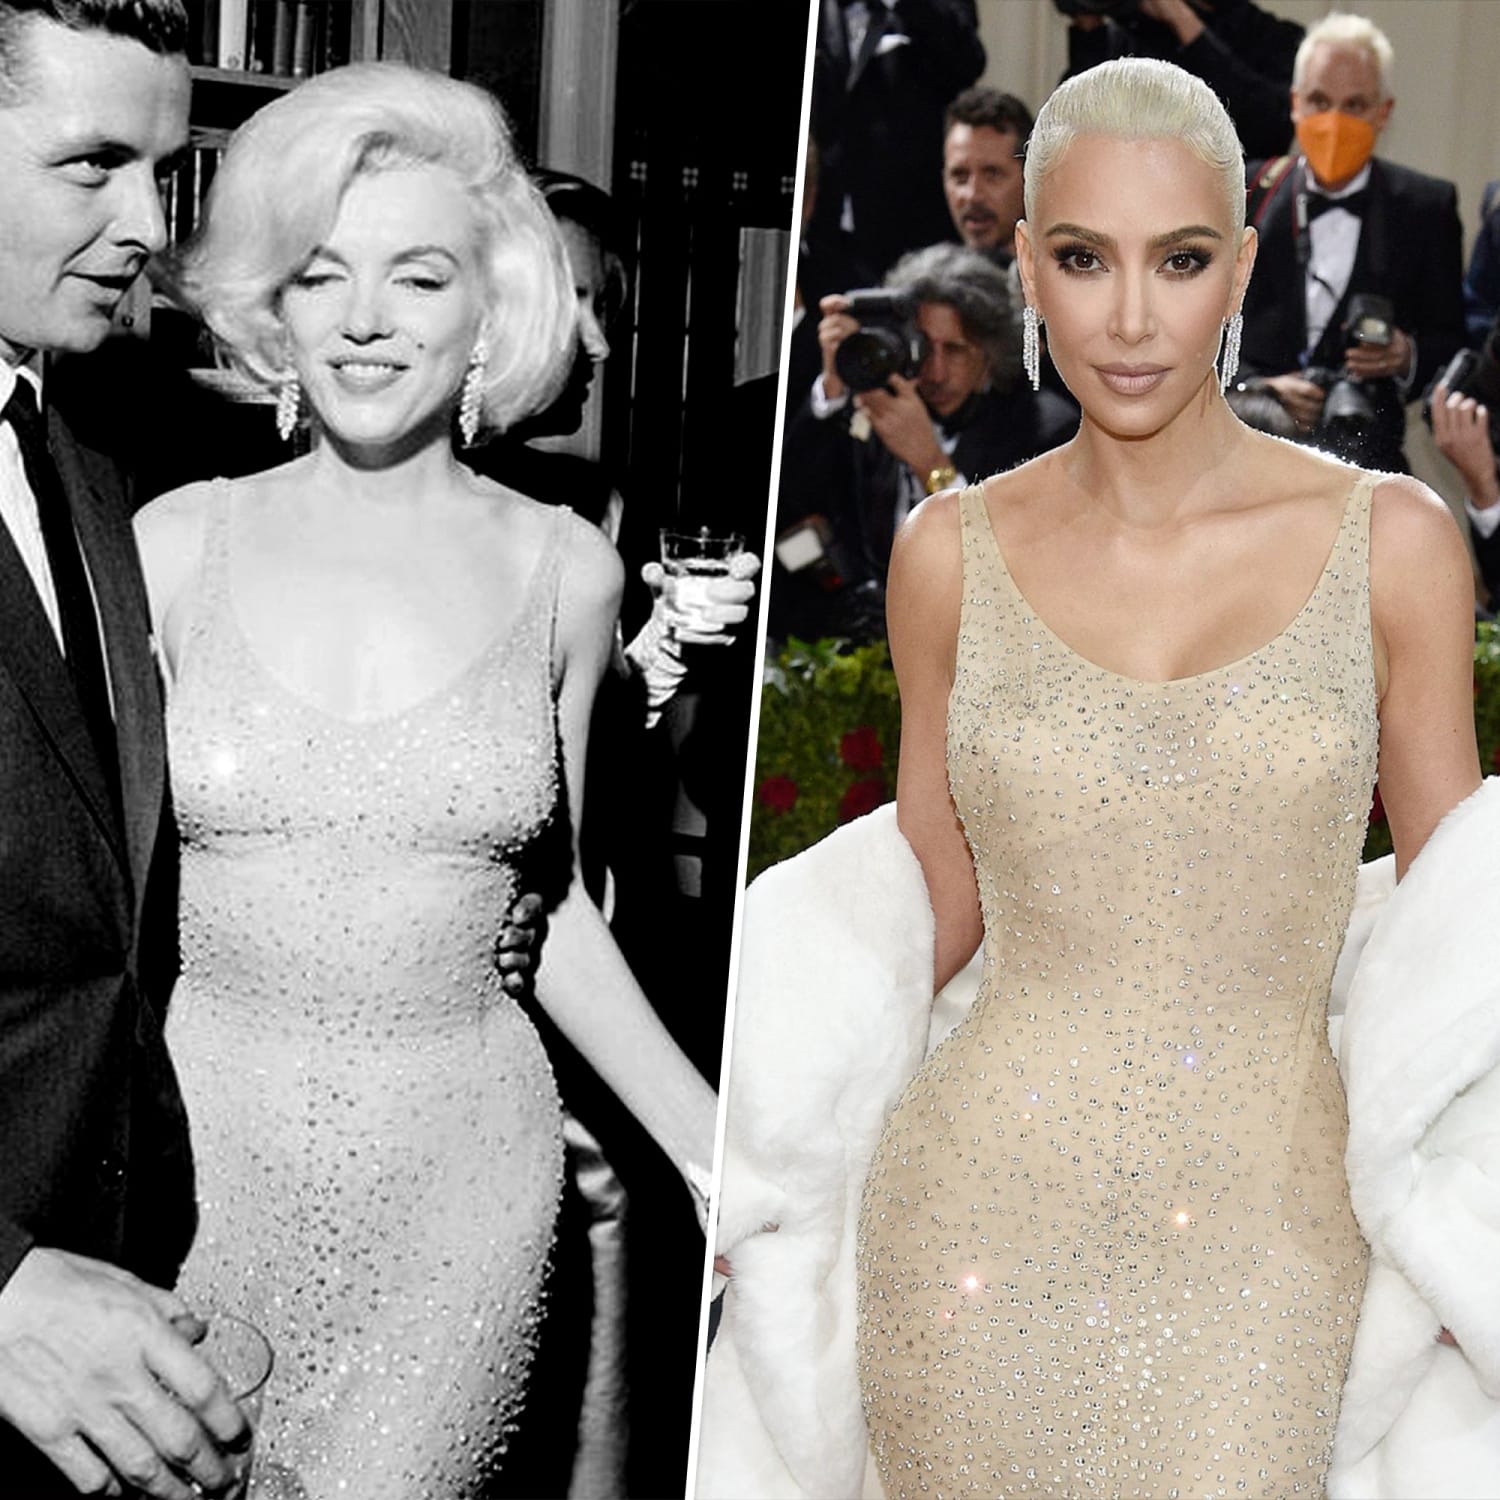 Kim Kardashian Reacts to Accusation She Damaged Marilyn Monroe's Dress at  Met Gala